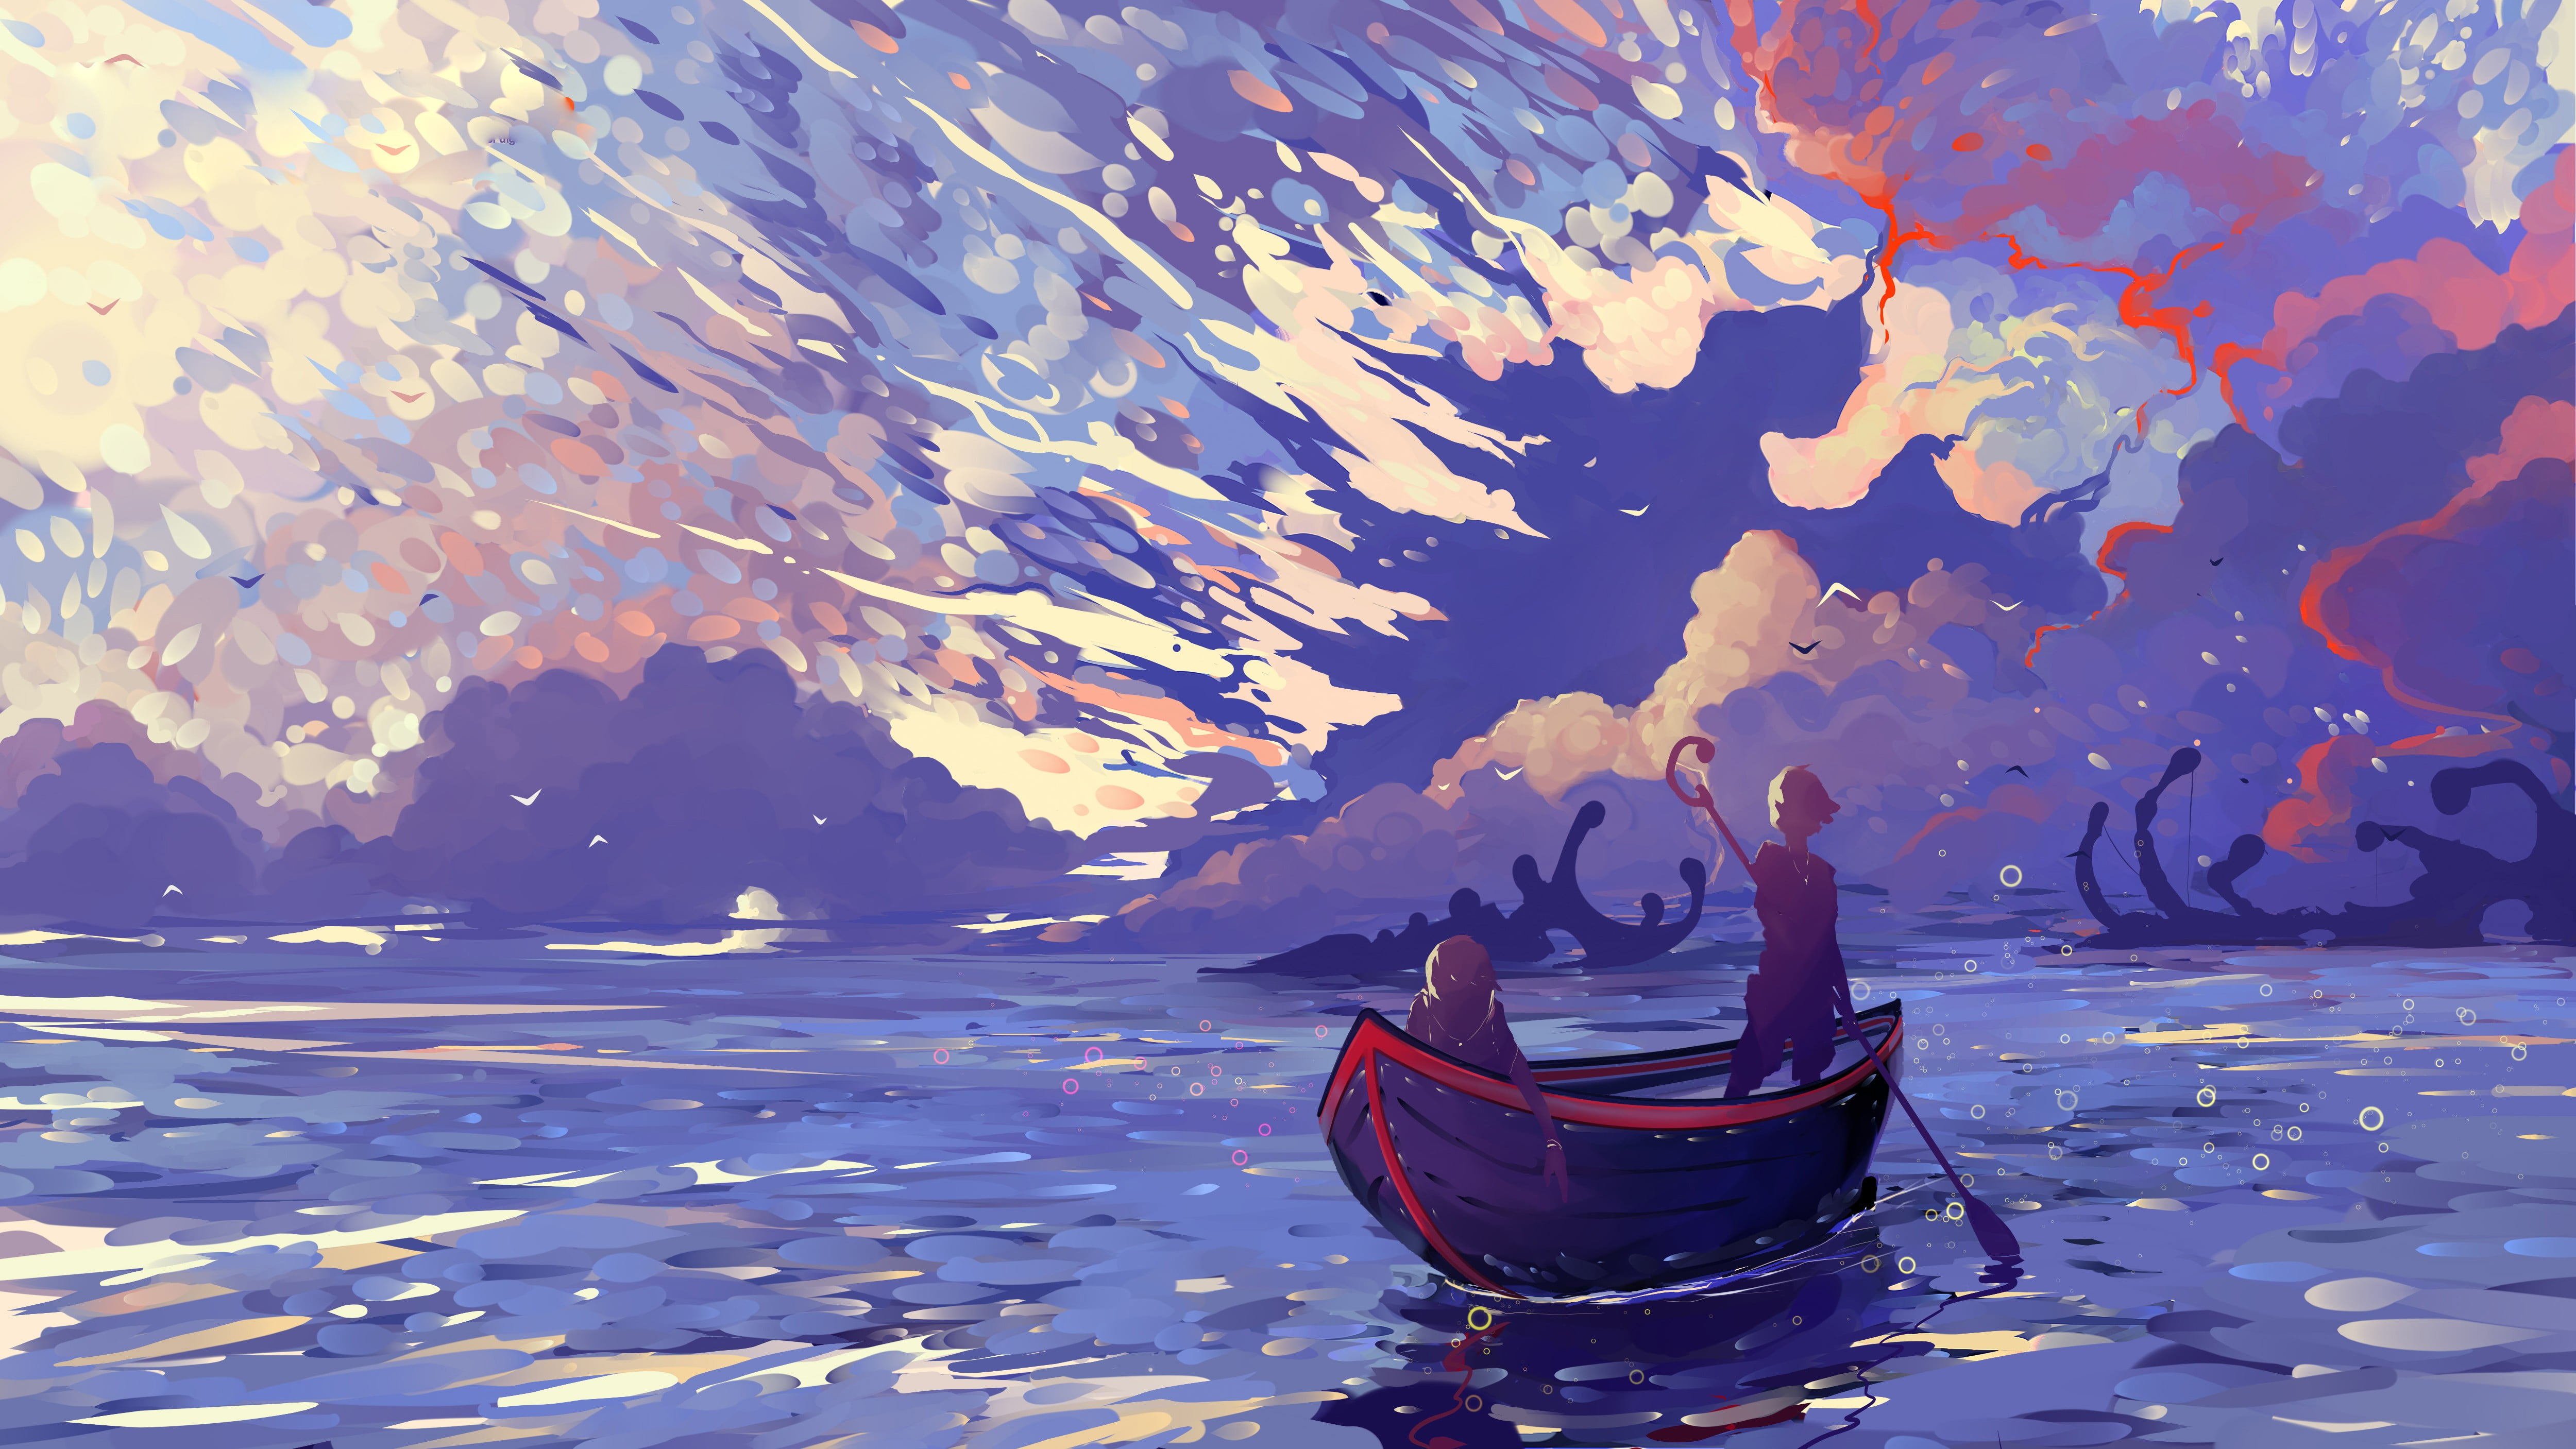 Boat painting, digital art, artwork, sky, illustration HD wallpaper